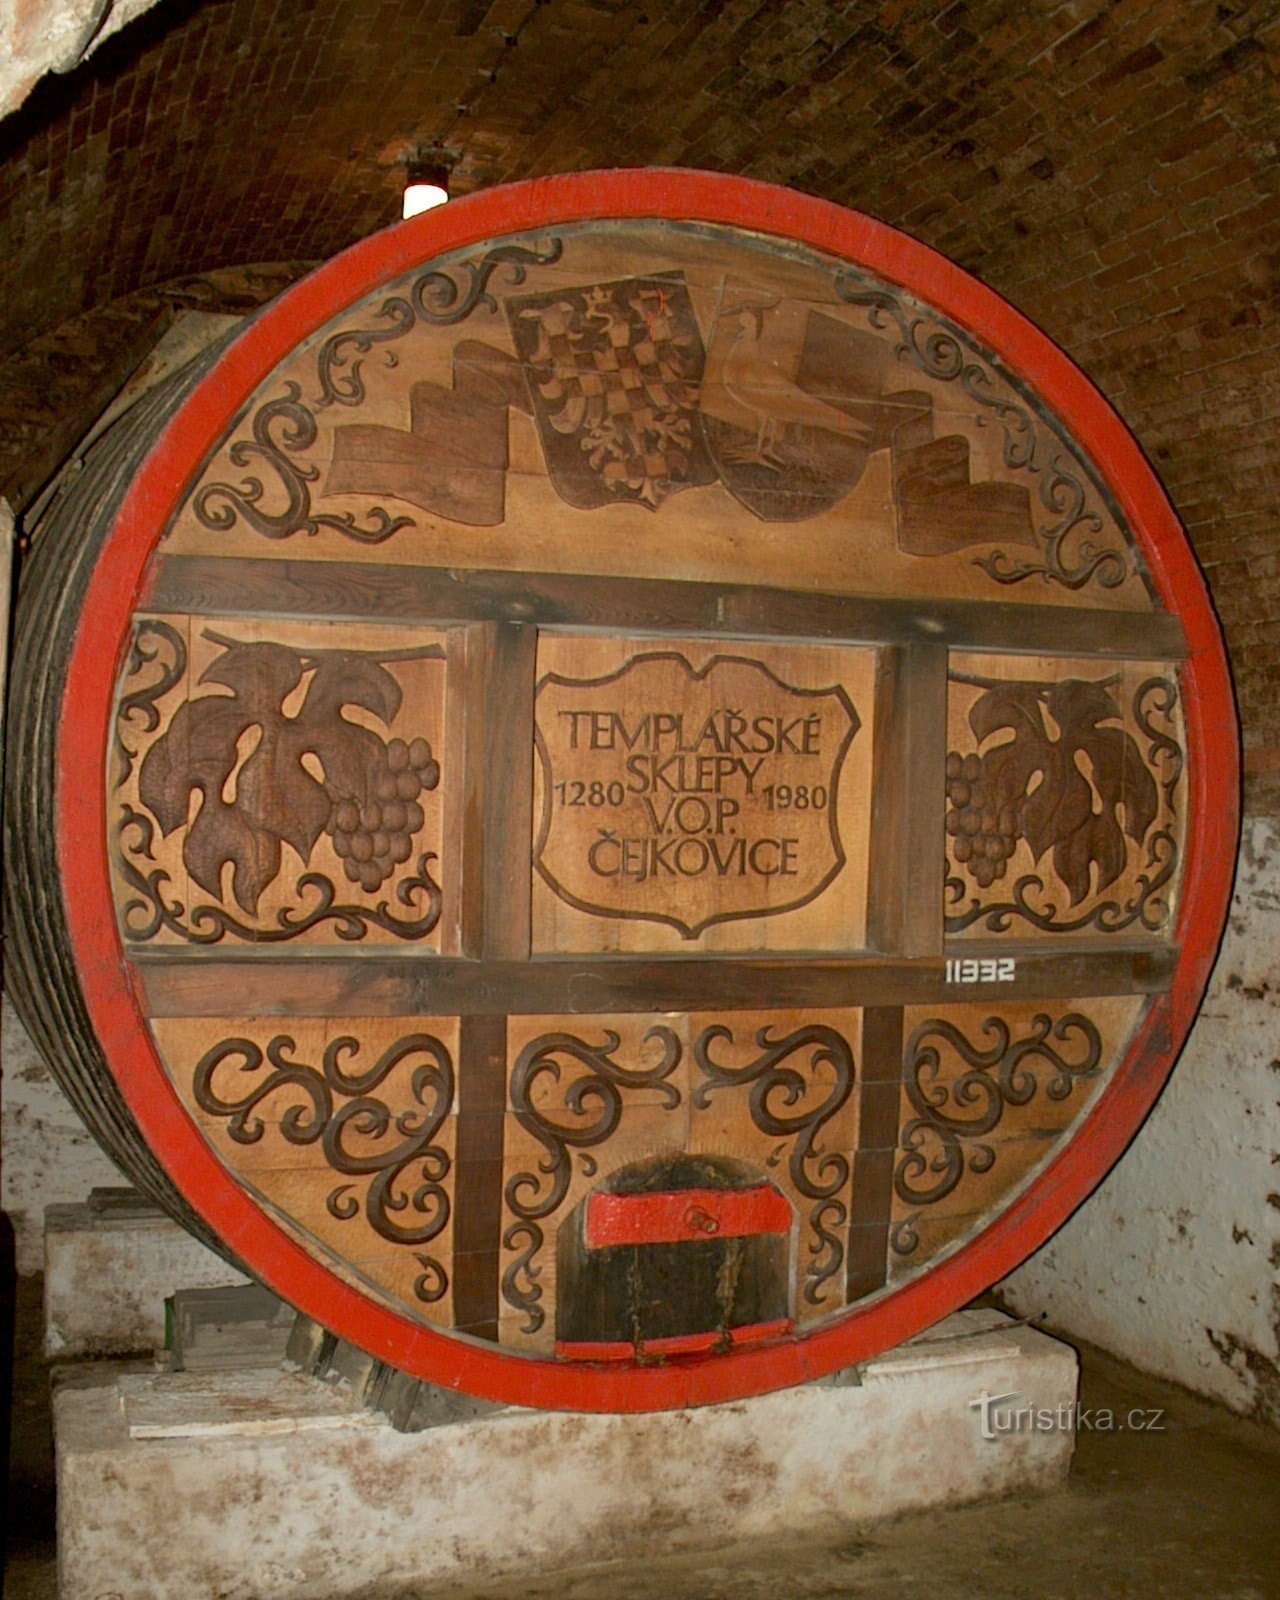 barril grande, foto © Čejkovice caves